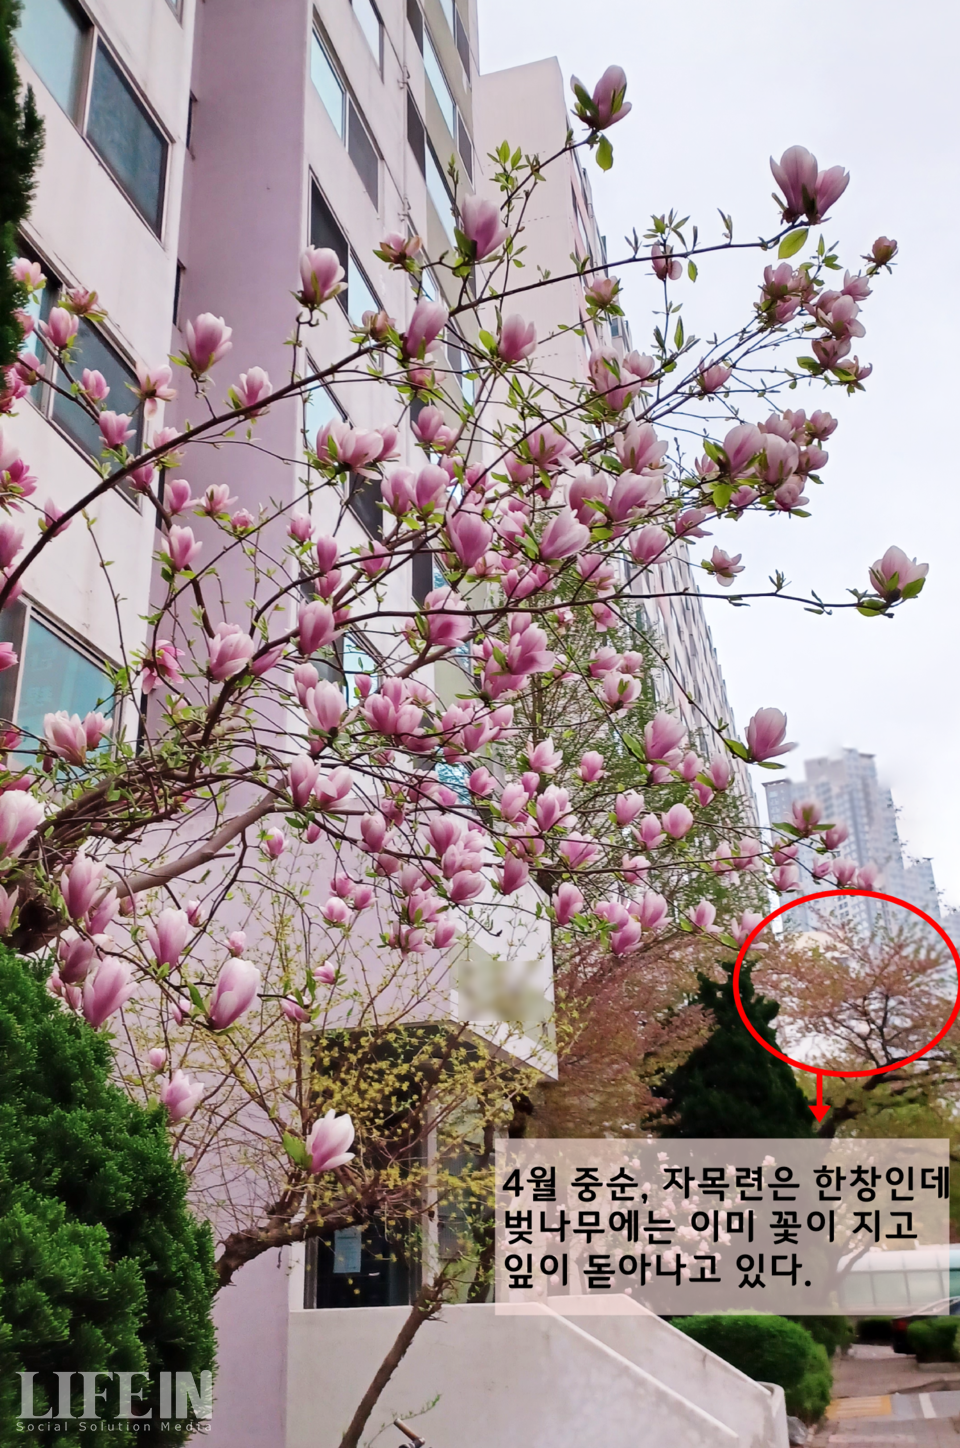 ▲ 지난 4월 11일 촬영한 자목련. 본래 자목련보다 늦게 피던 벚꽃이 올해는 먼저 피었다가 진 모습이다. ⓒ라이프인